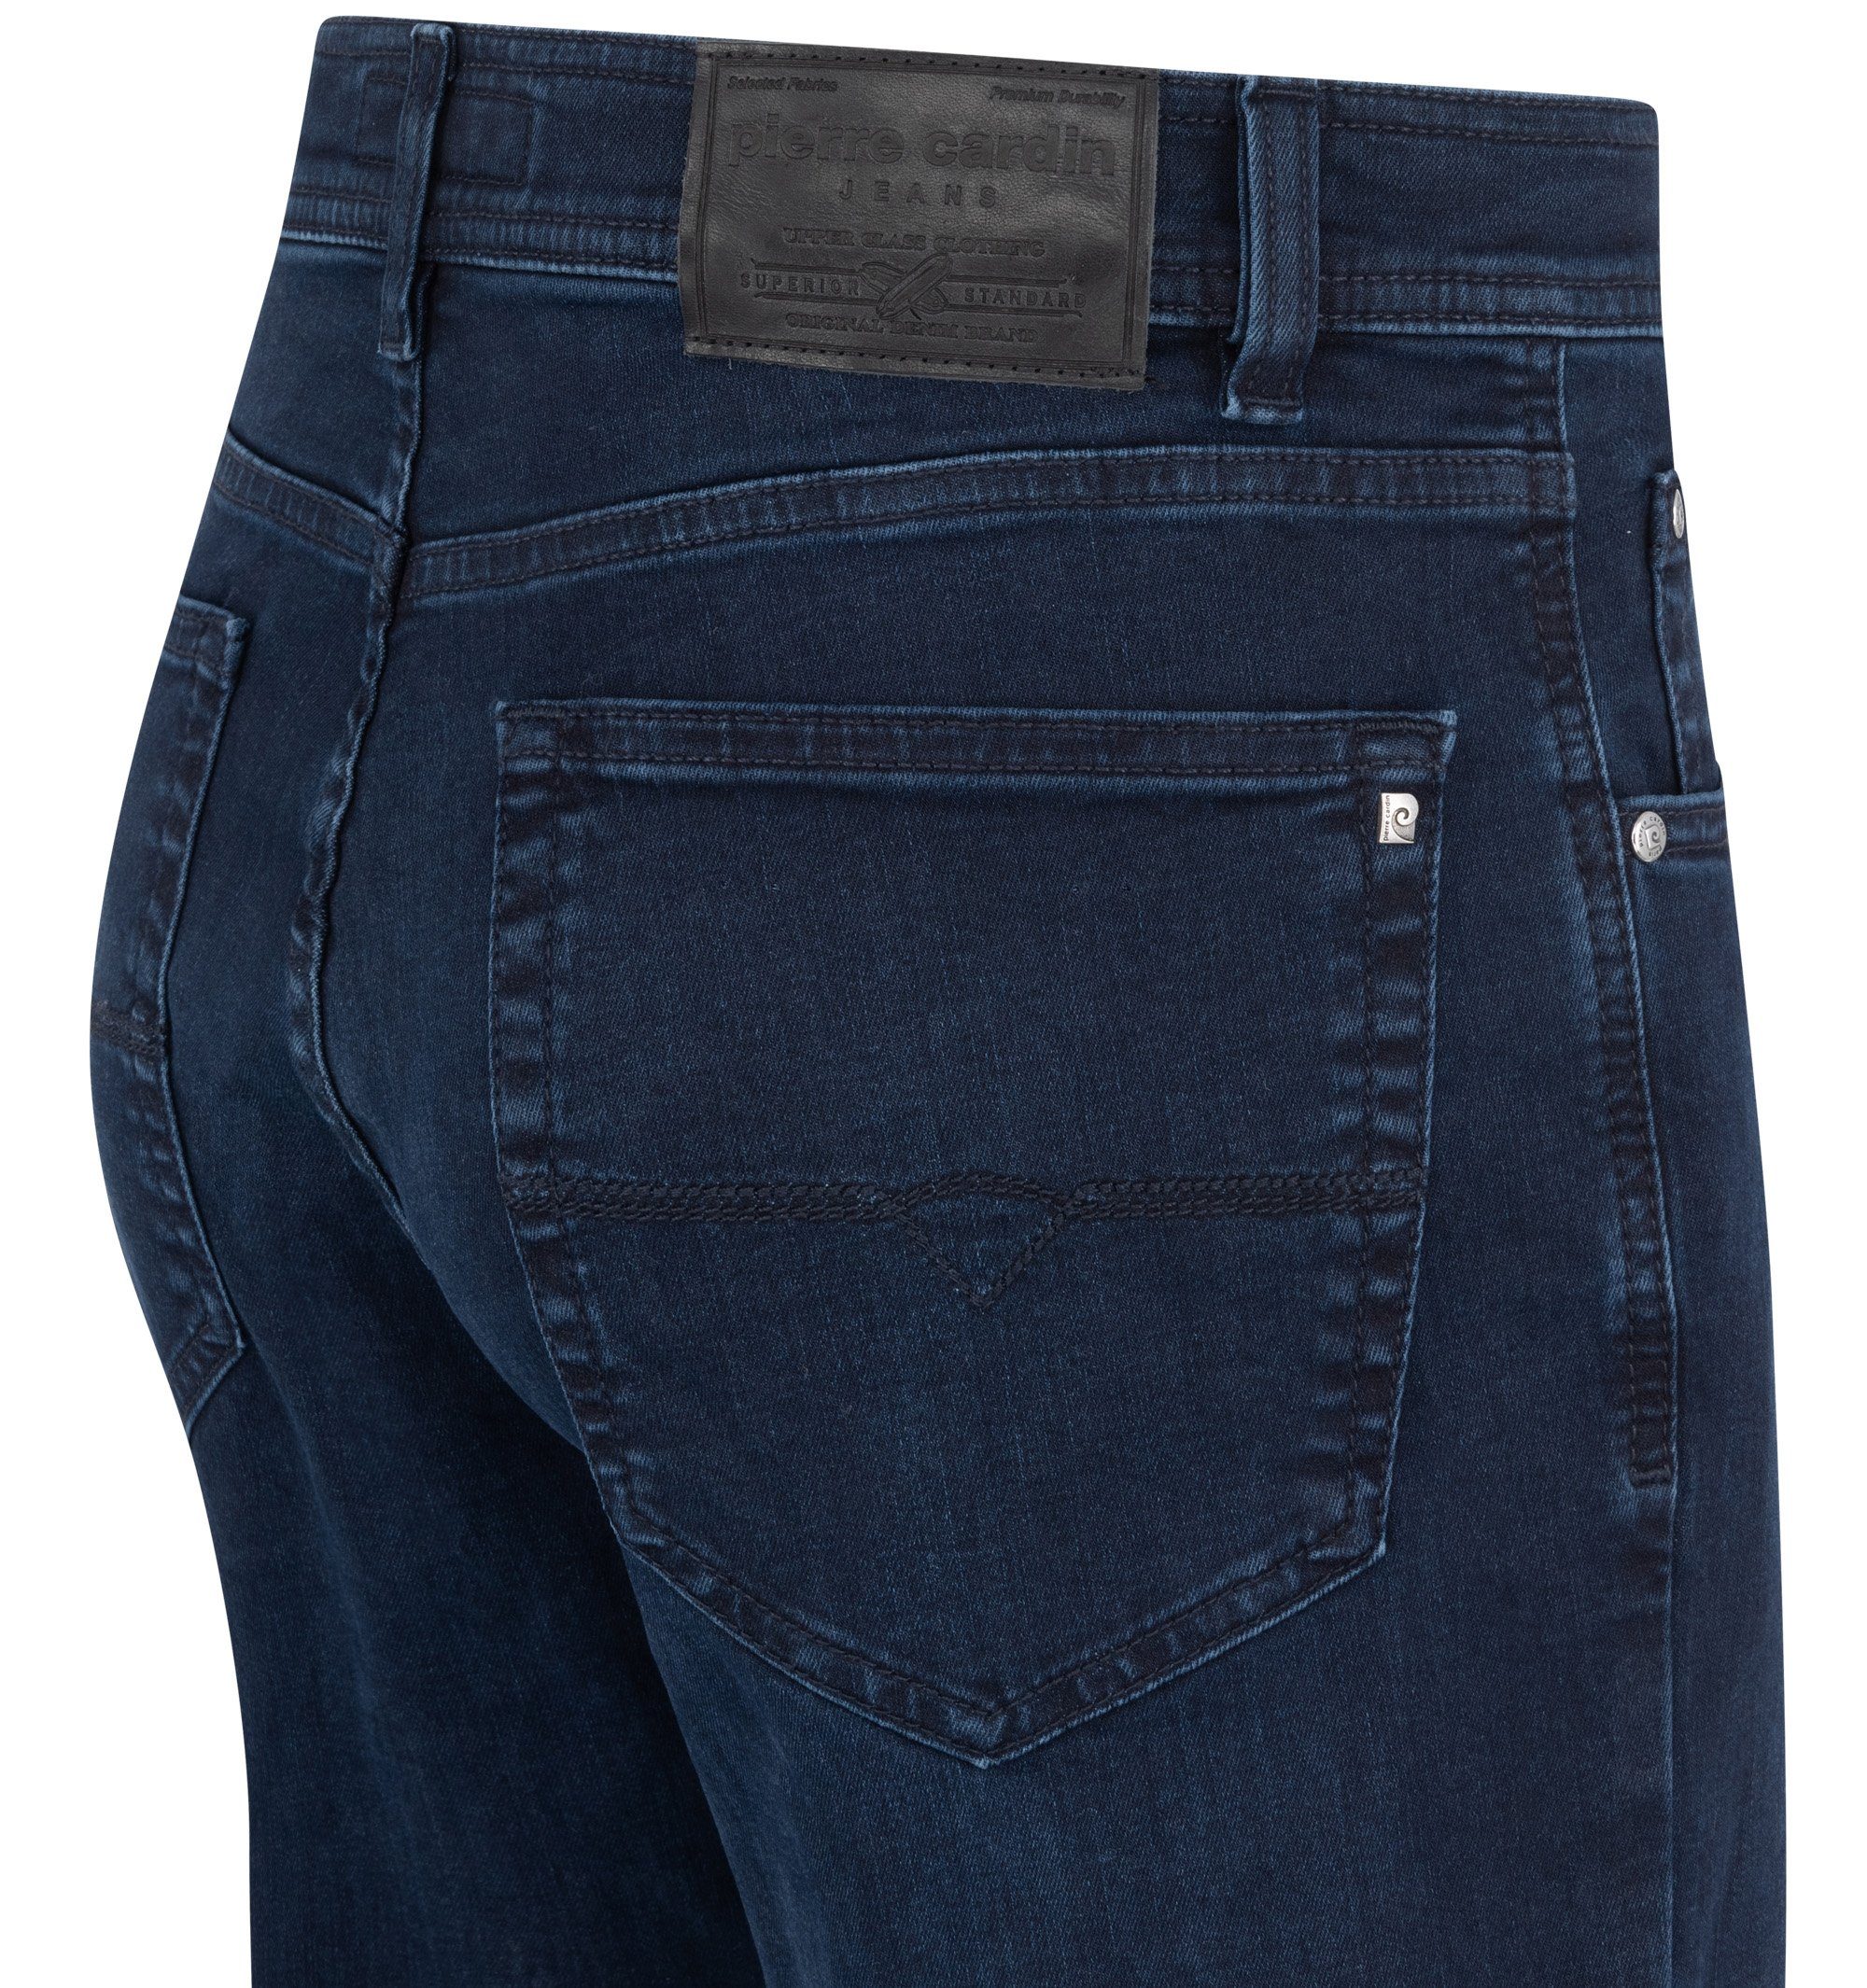 blue/black Cardin 7005.6802 CARDIN 32310 Pierre used 5-Pocket-Jeans DIJON PIERRE